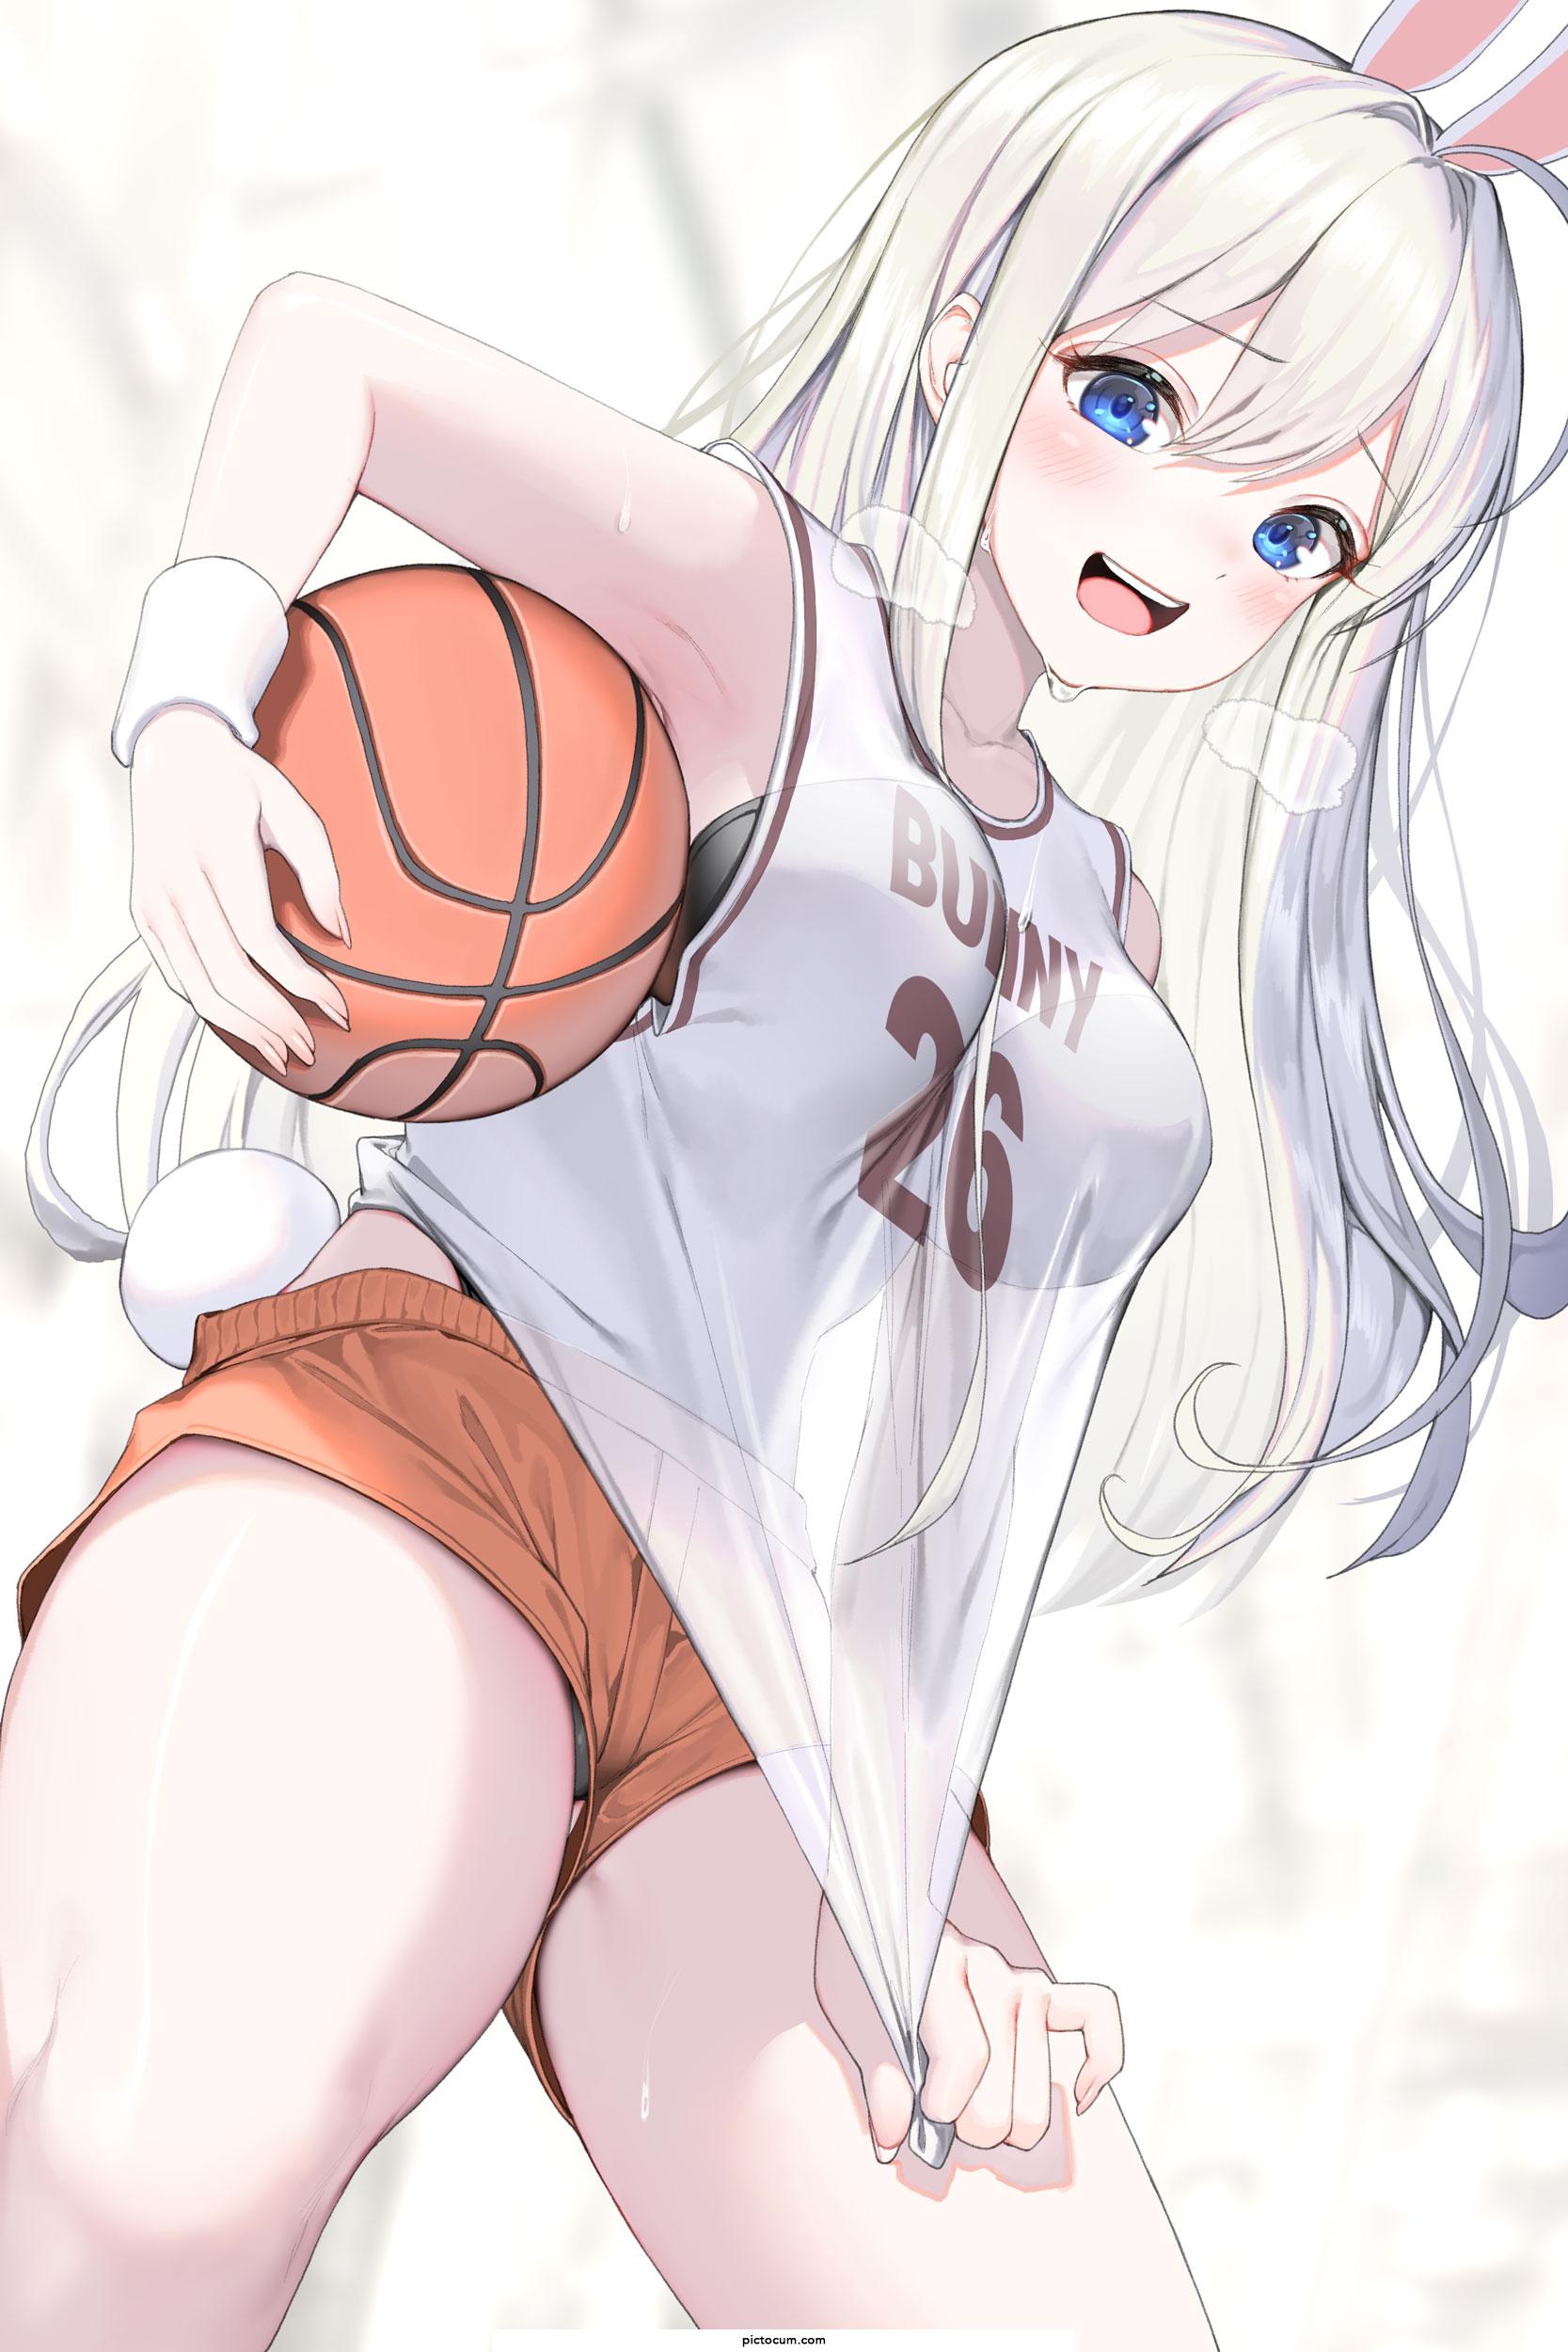 Basketball Bunny